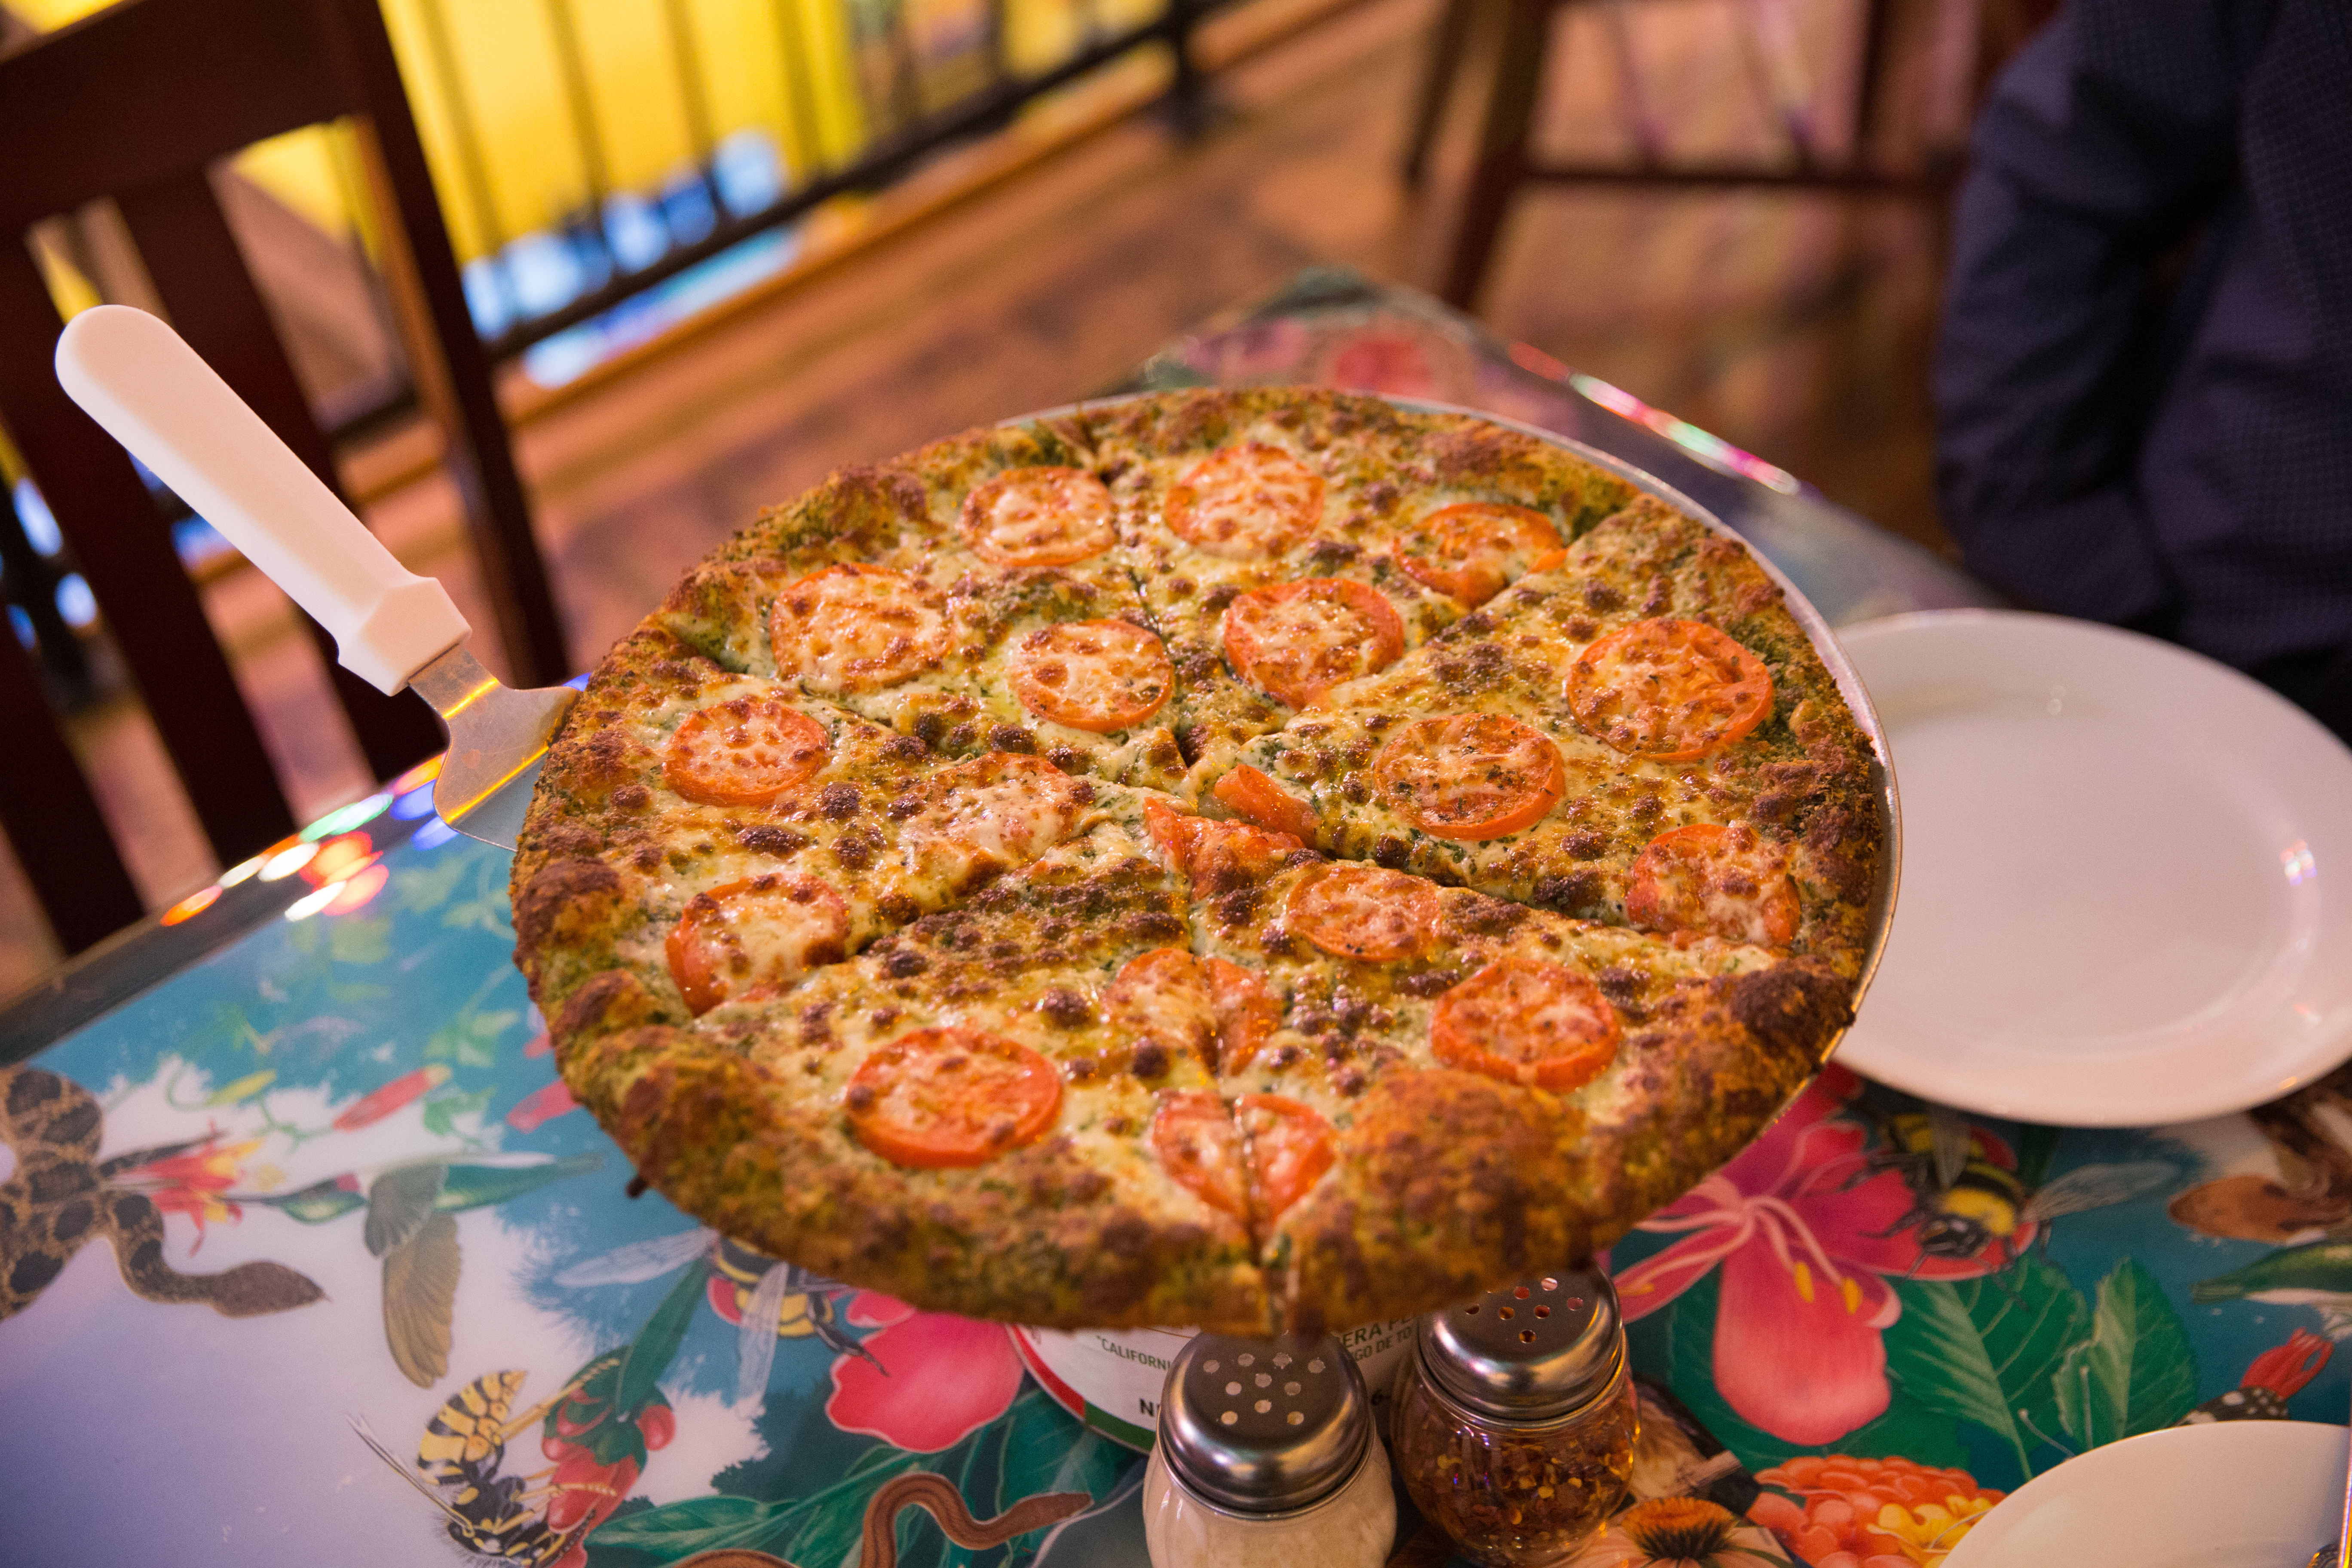 Pesto, olive oil, garlic, tomatoes, mozzarella pizza from from Sam & Greg's in Huntsville, Al